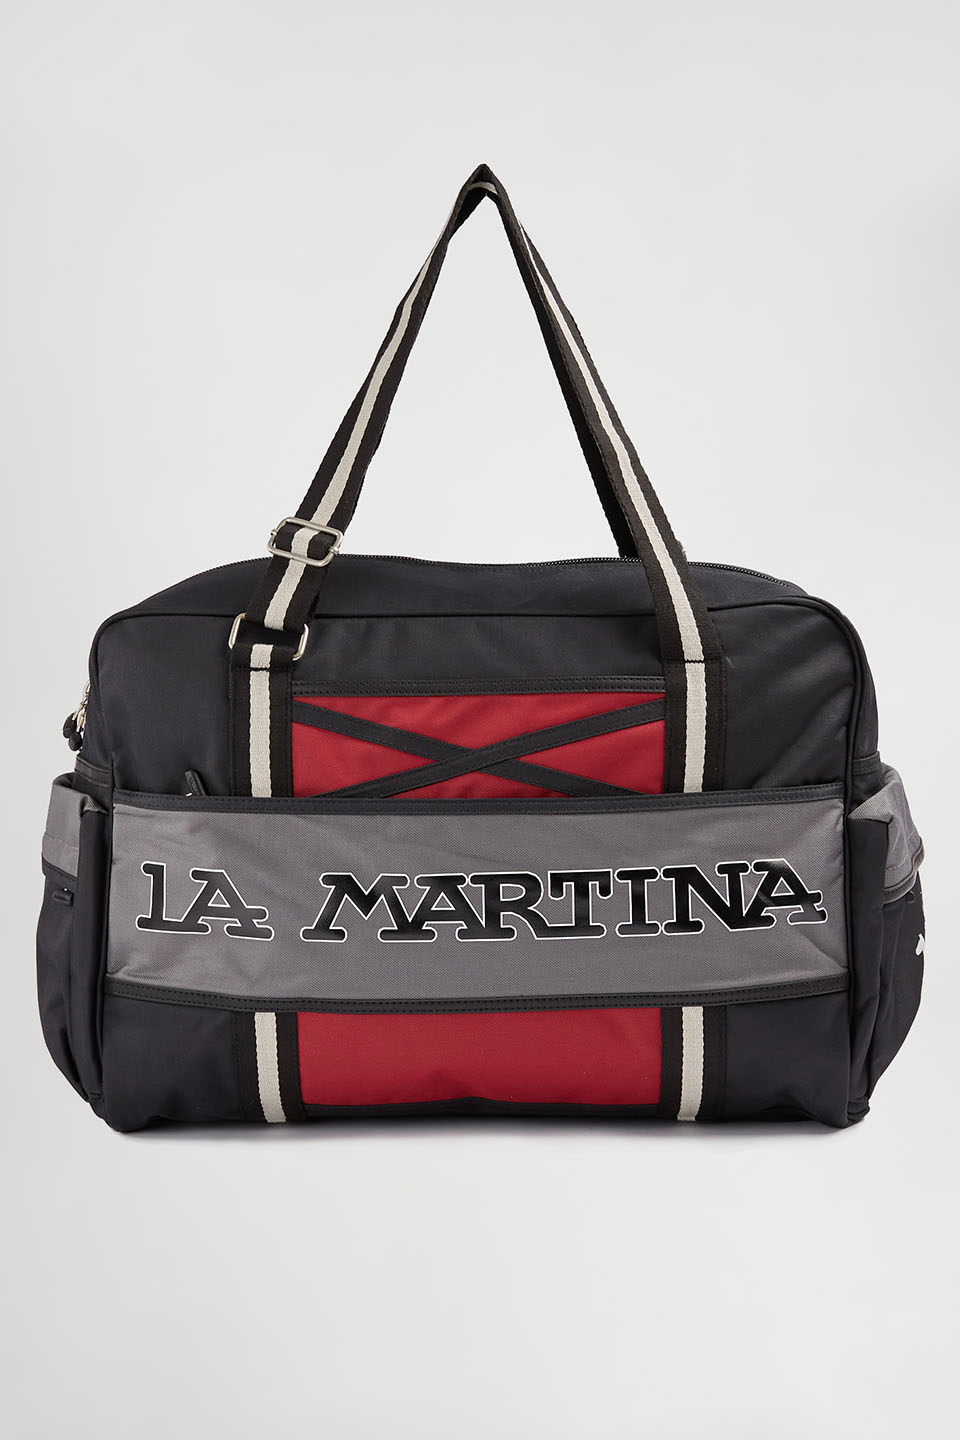 Grand sac en nylon | La Martina - Official Online Shop